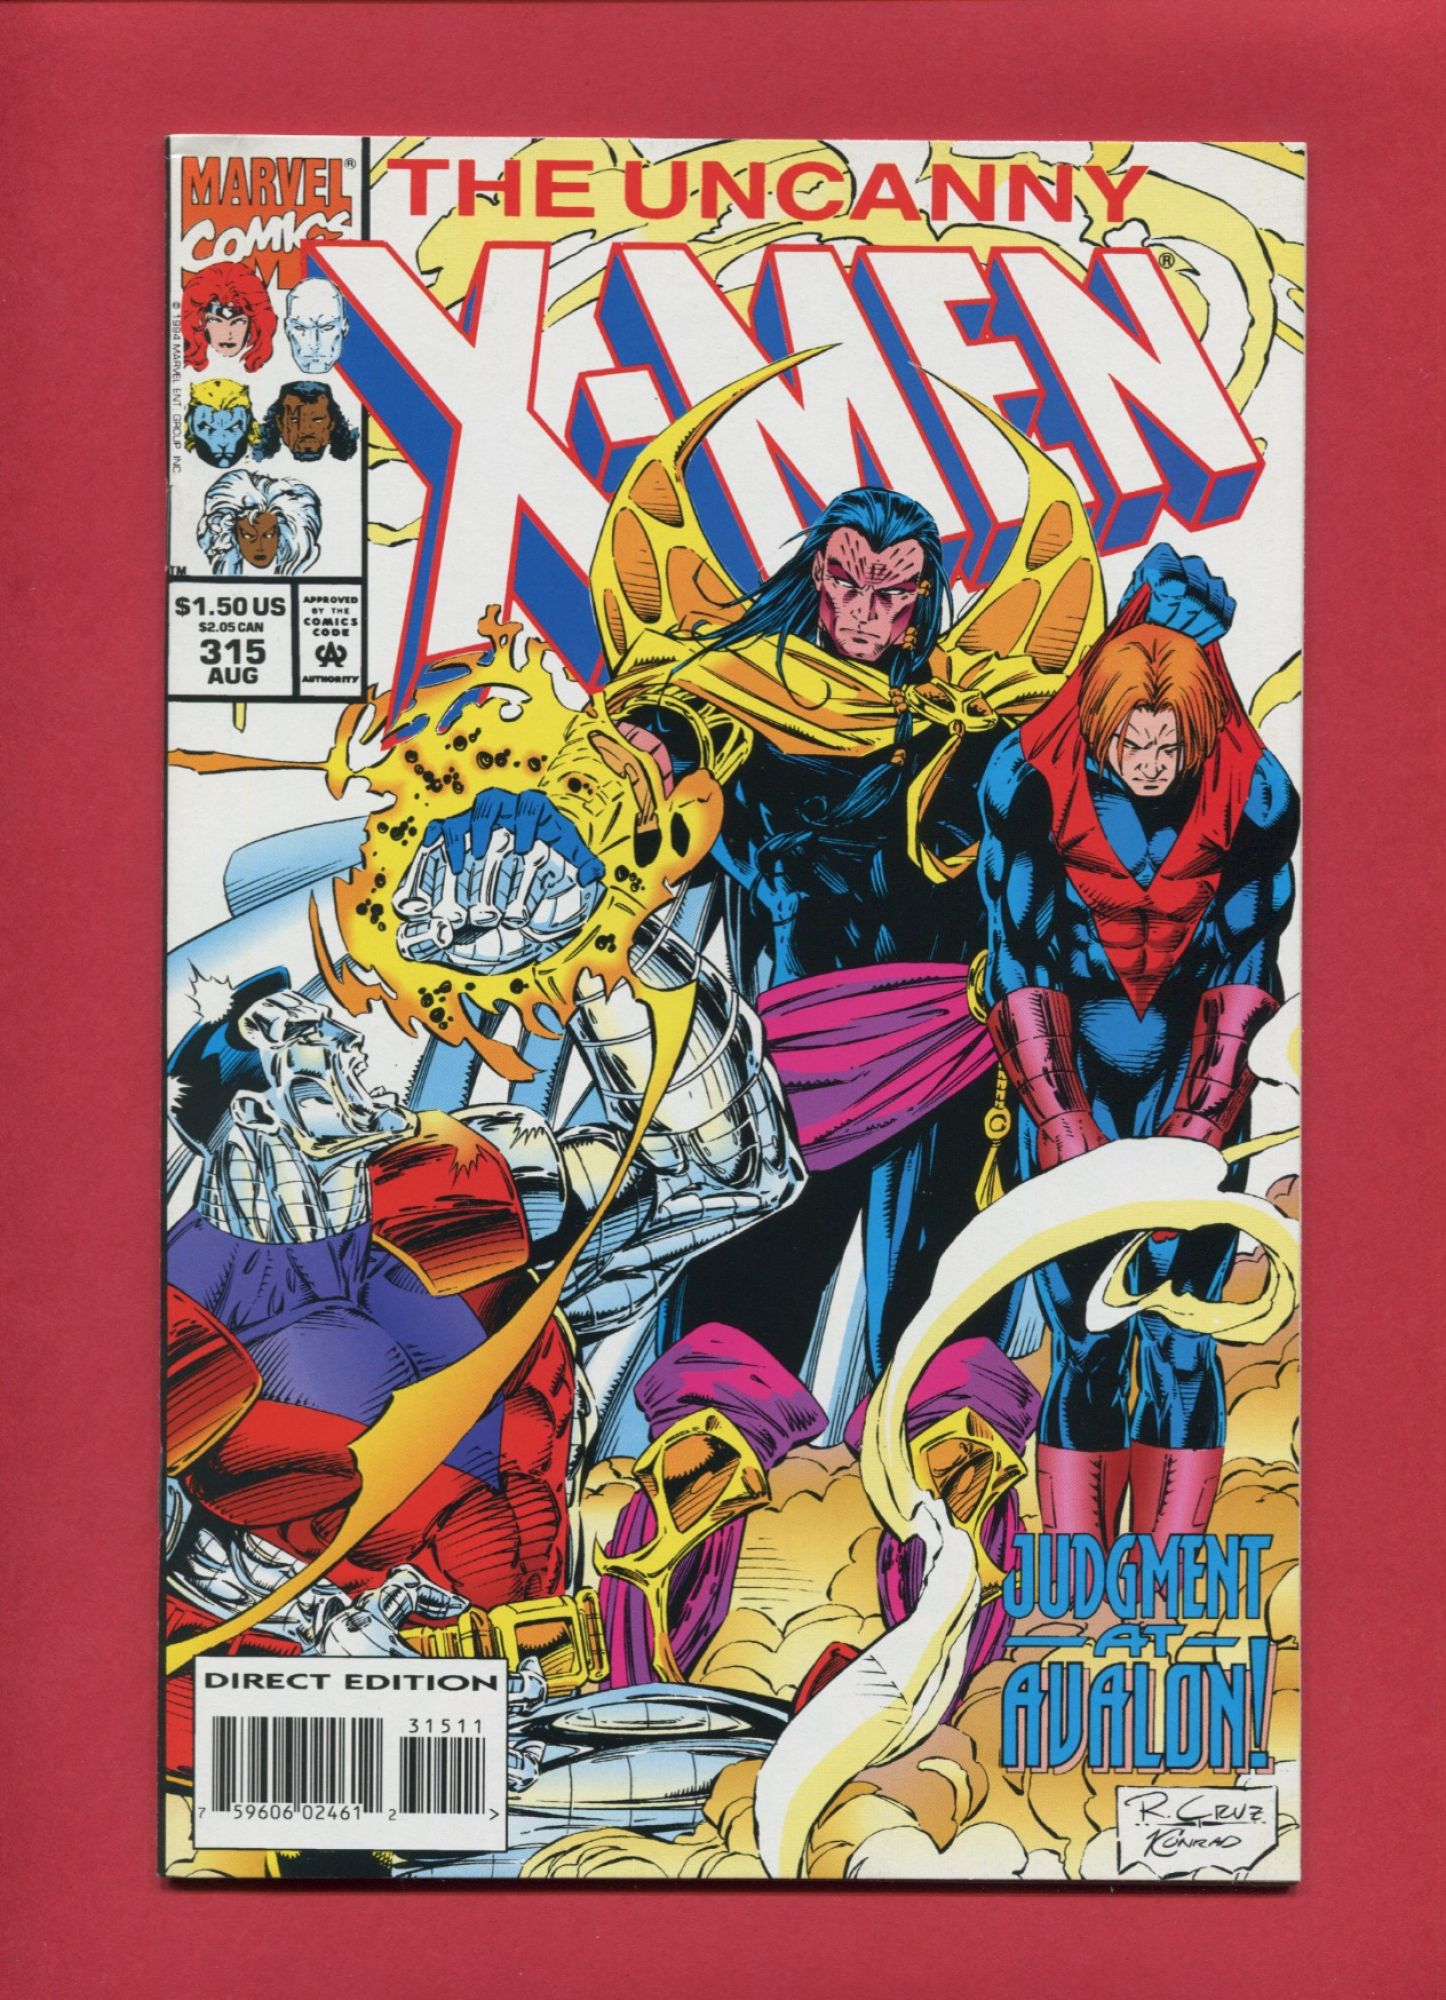 Uncanny X-Men (Volume 1 1963) #315, Aug 1994, Marvel :: Iconic Comics ...